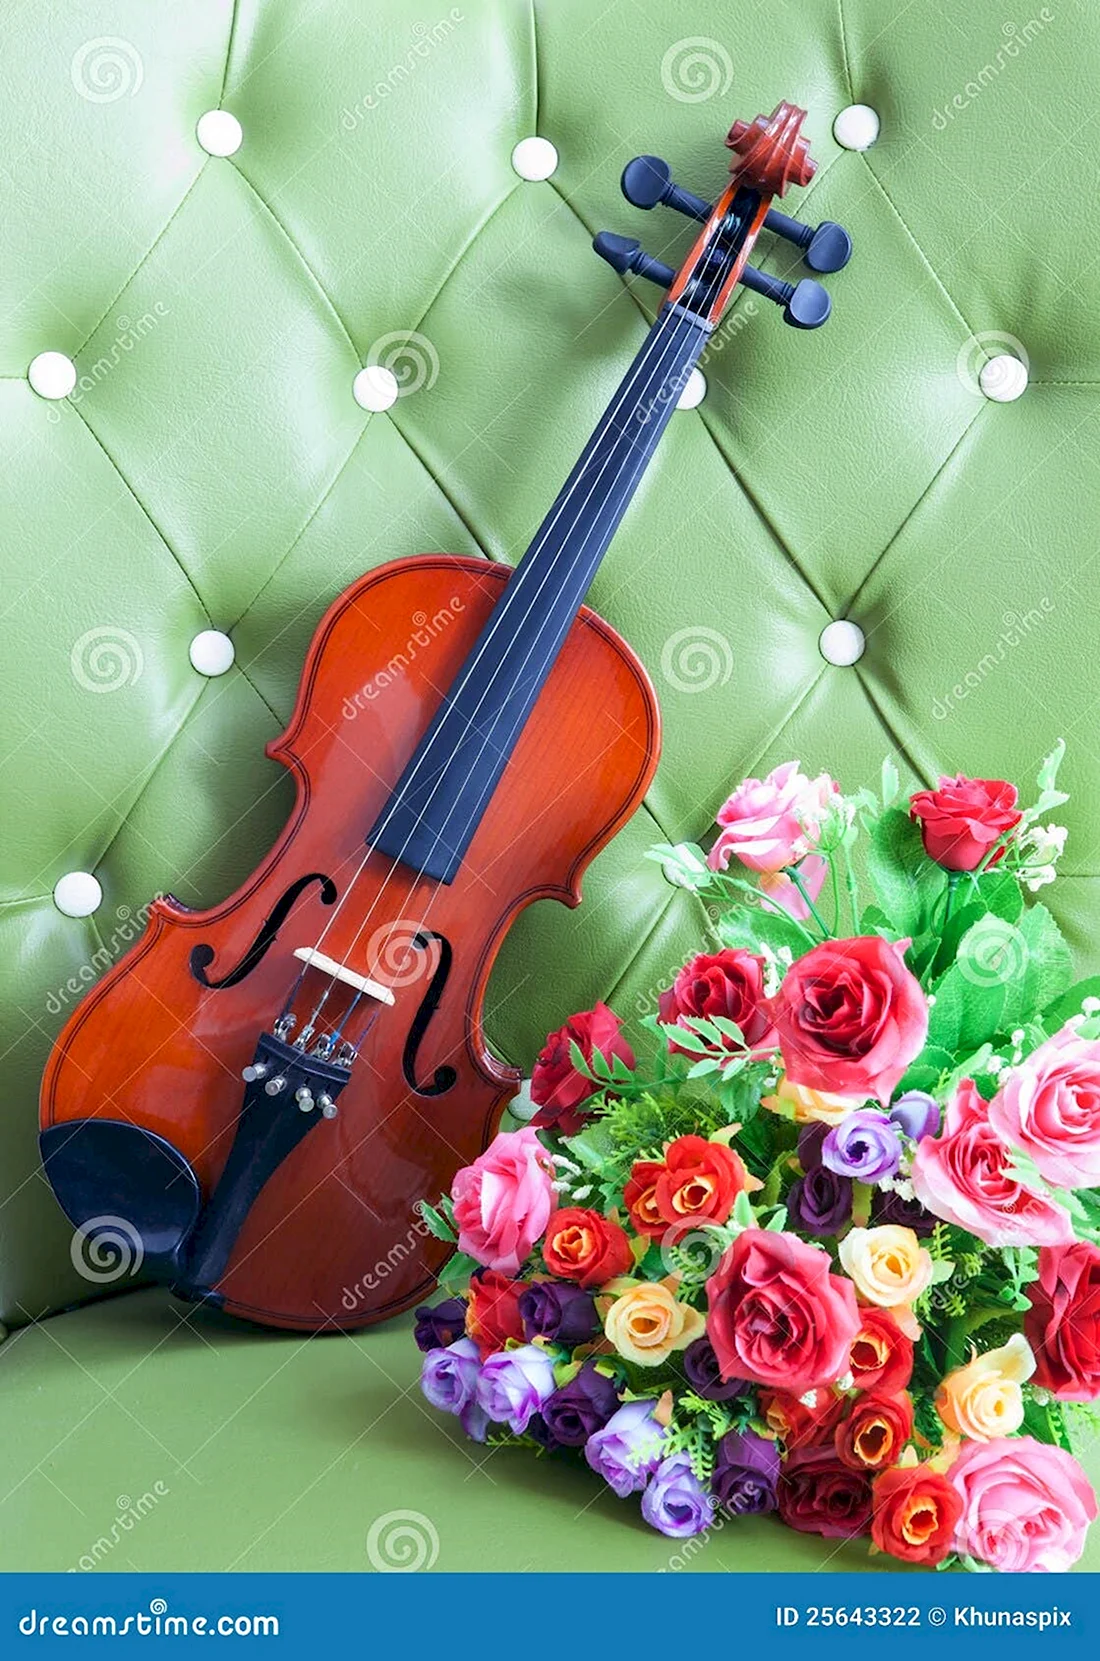 Букет цветов и скрипка